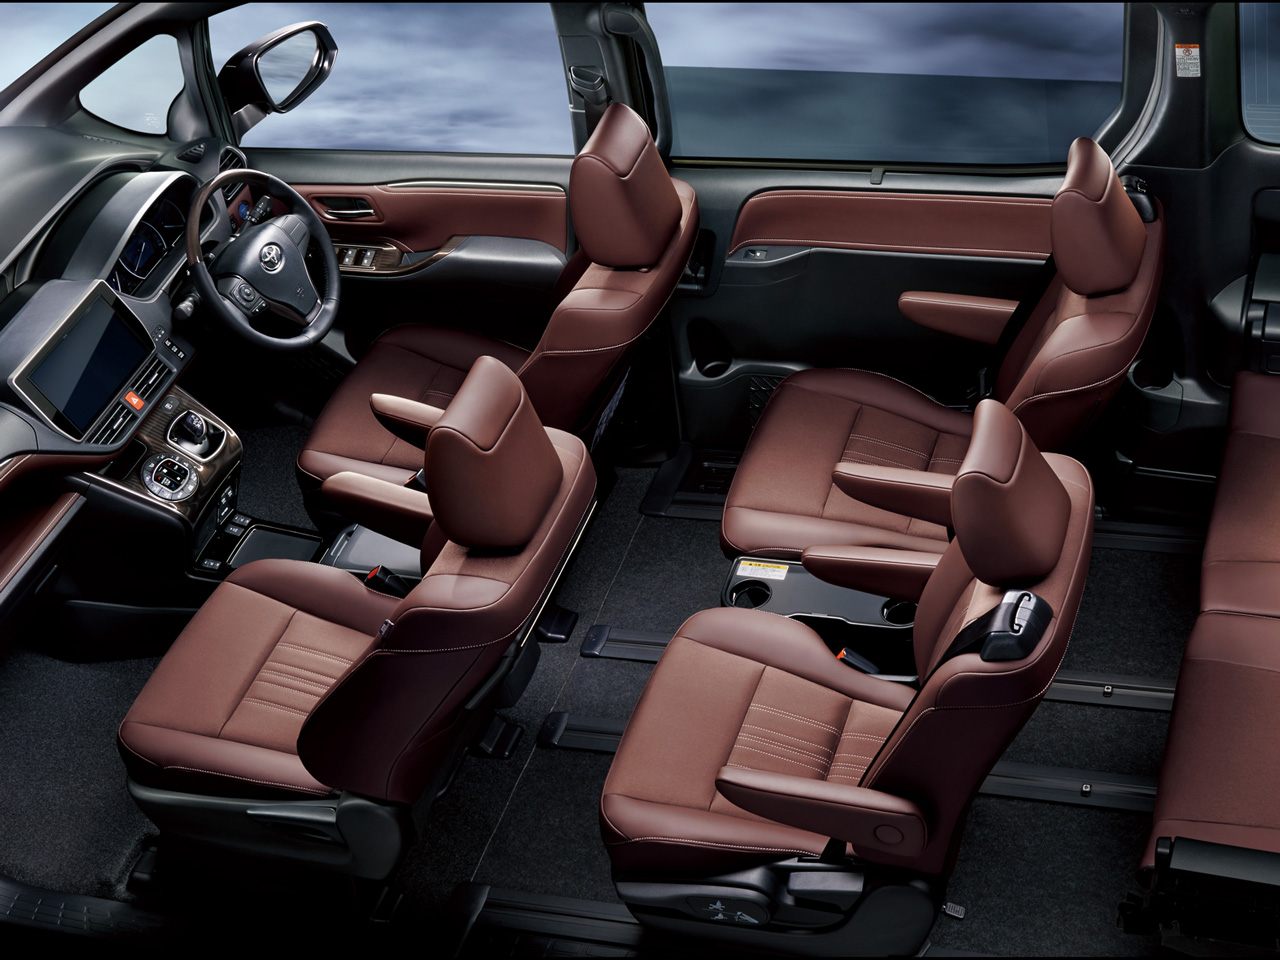 トヨタ エスクァイア 14年モデル Gi Premium Package Black Tailored 4wdの価格 性能 装備 オプション 19年1月7日発売 価格 Com